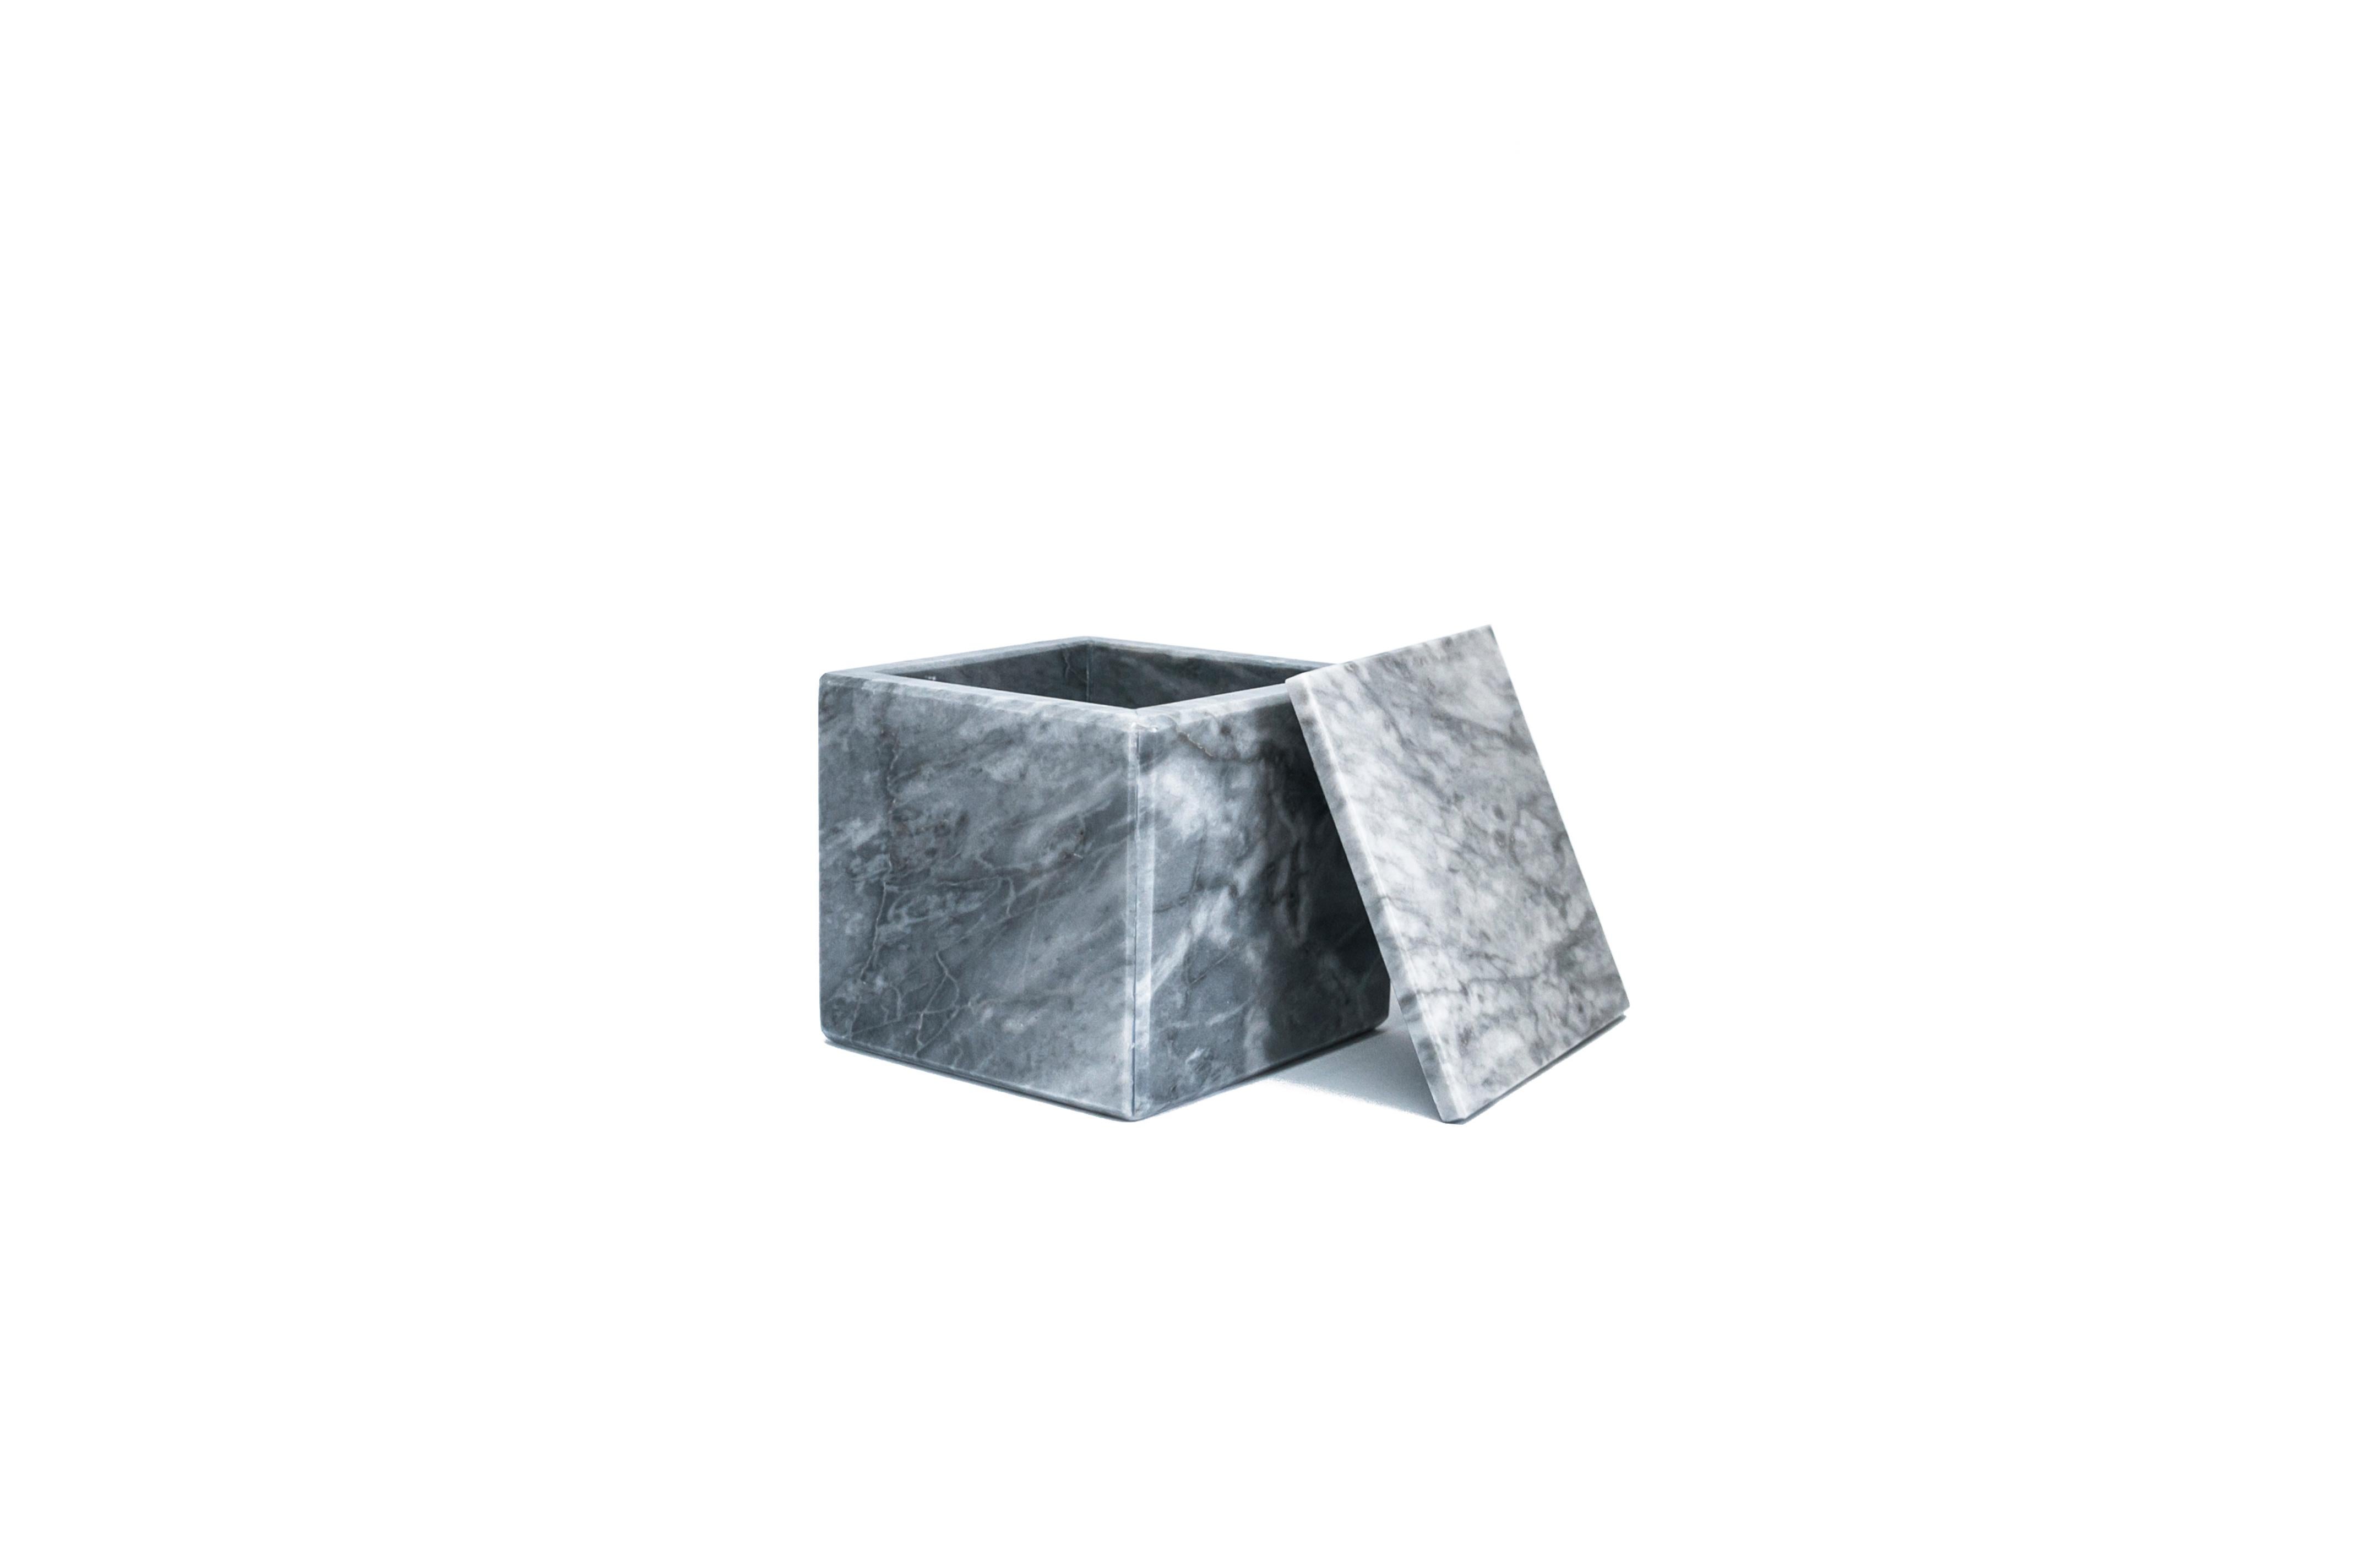 Quadratische graue Bardiglio-Marmorschachtel mit Deckel.
Jedes Stück ist in gewisser Weise einzigartig (da jeder Marmorblock unterschiedliche Maserungen und Schattierungen aufweist) und wird in Italien handgefertigt. Geringfügige Abweichungen in